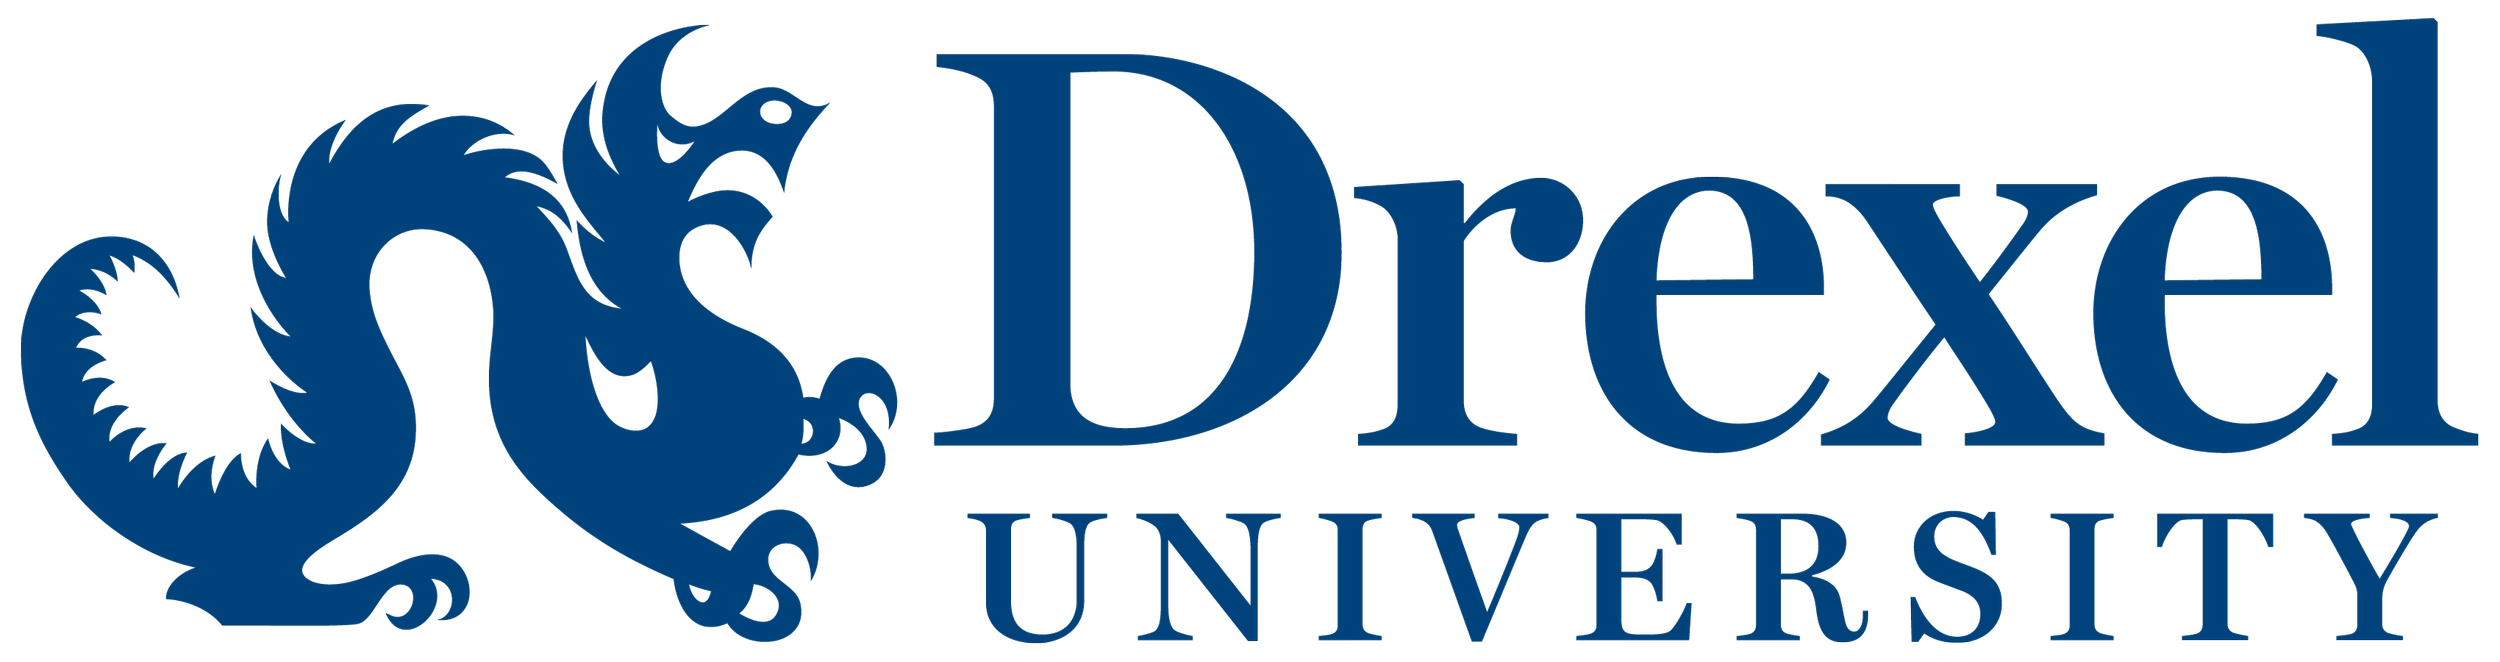 Drexel-logo.png